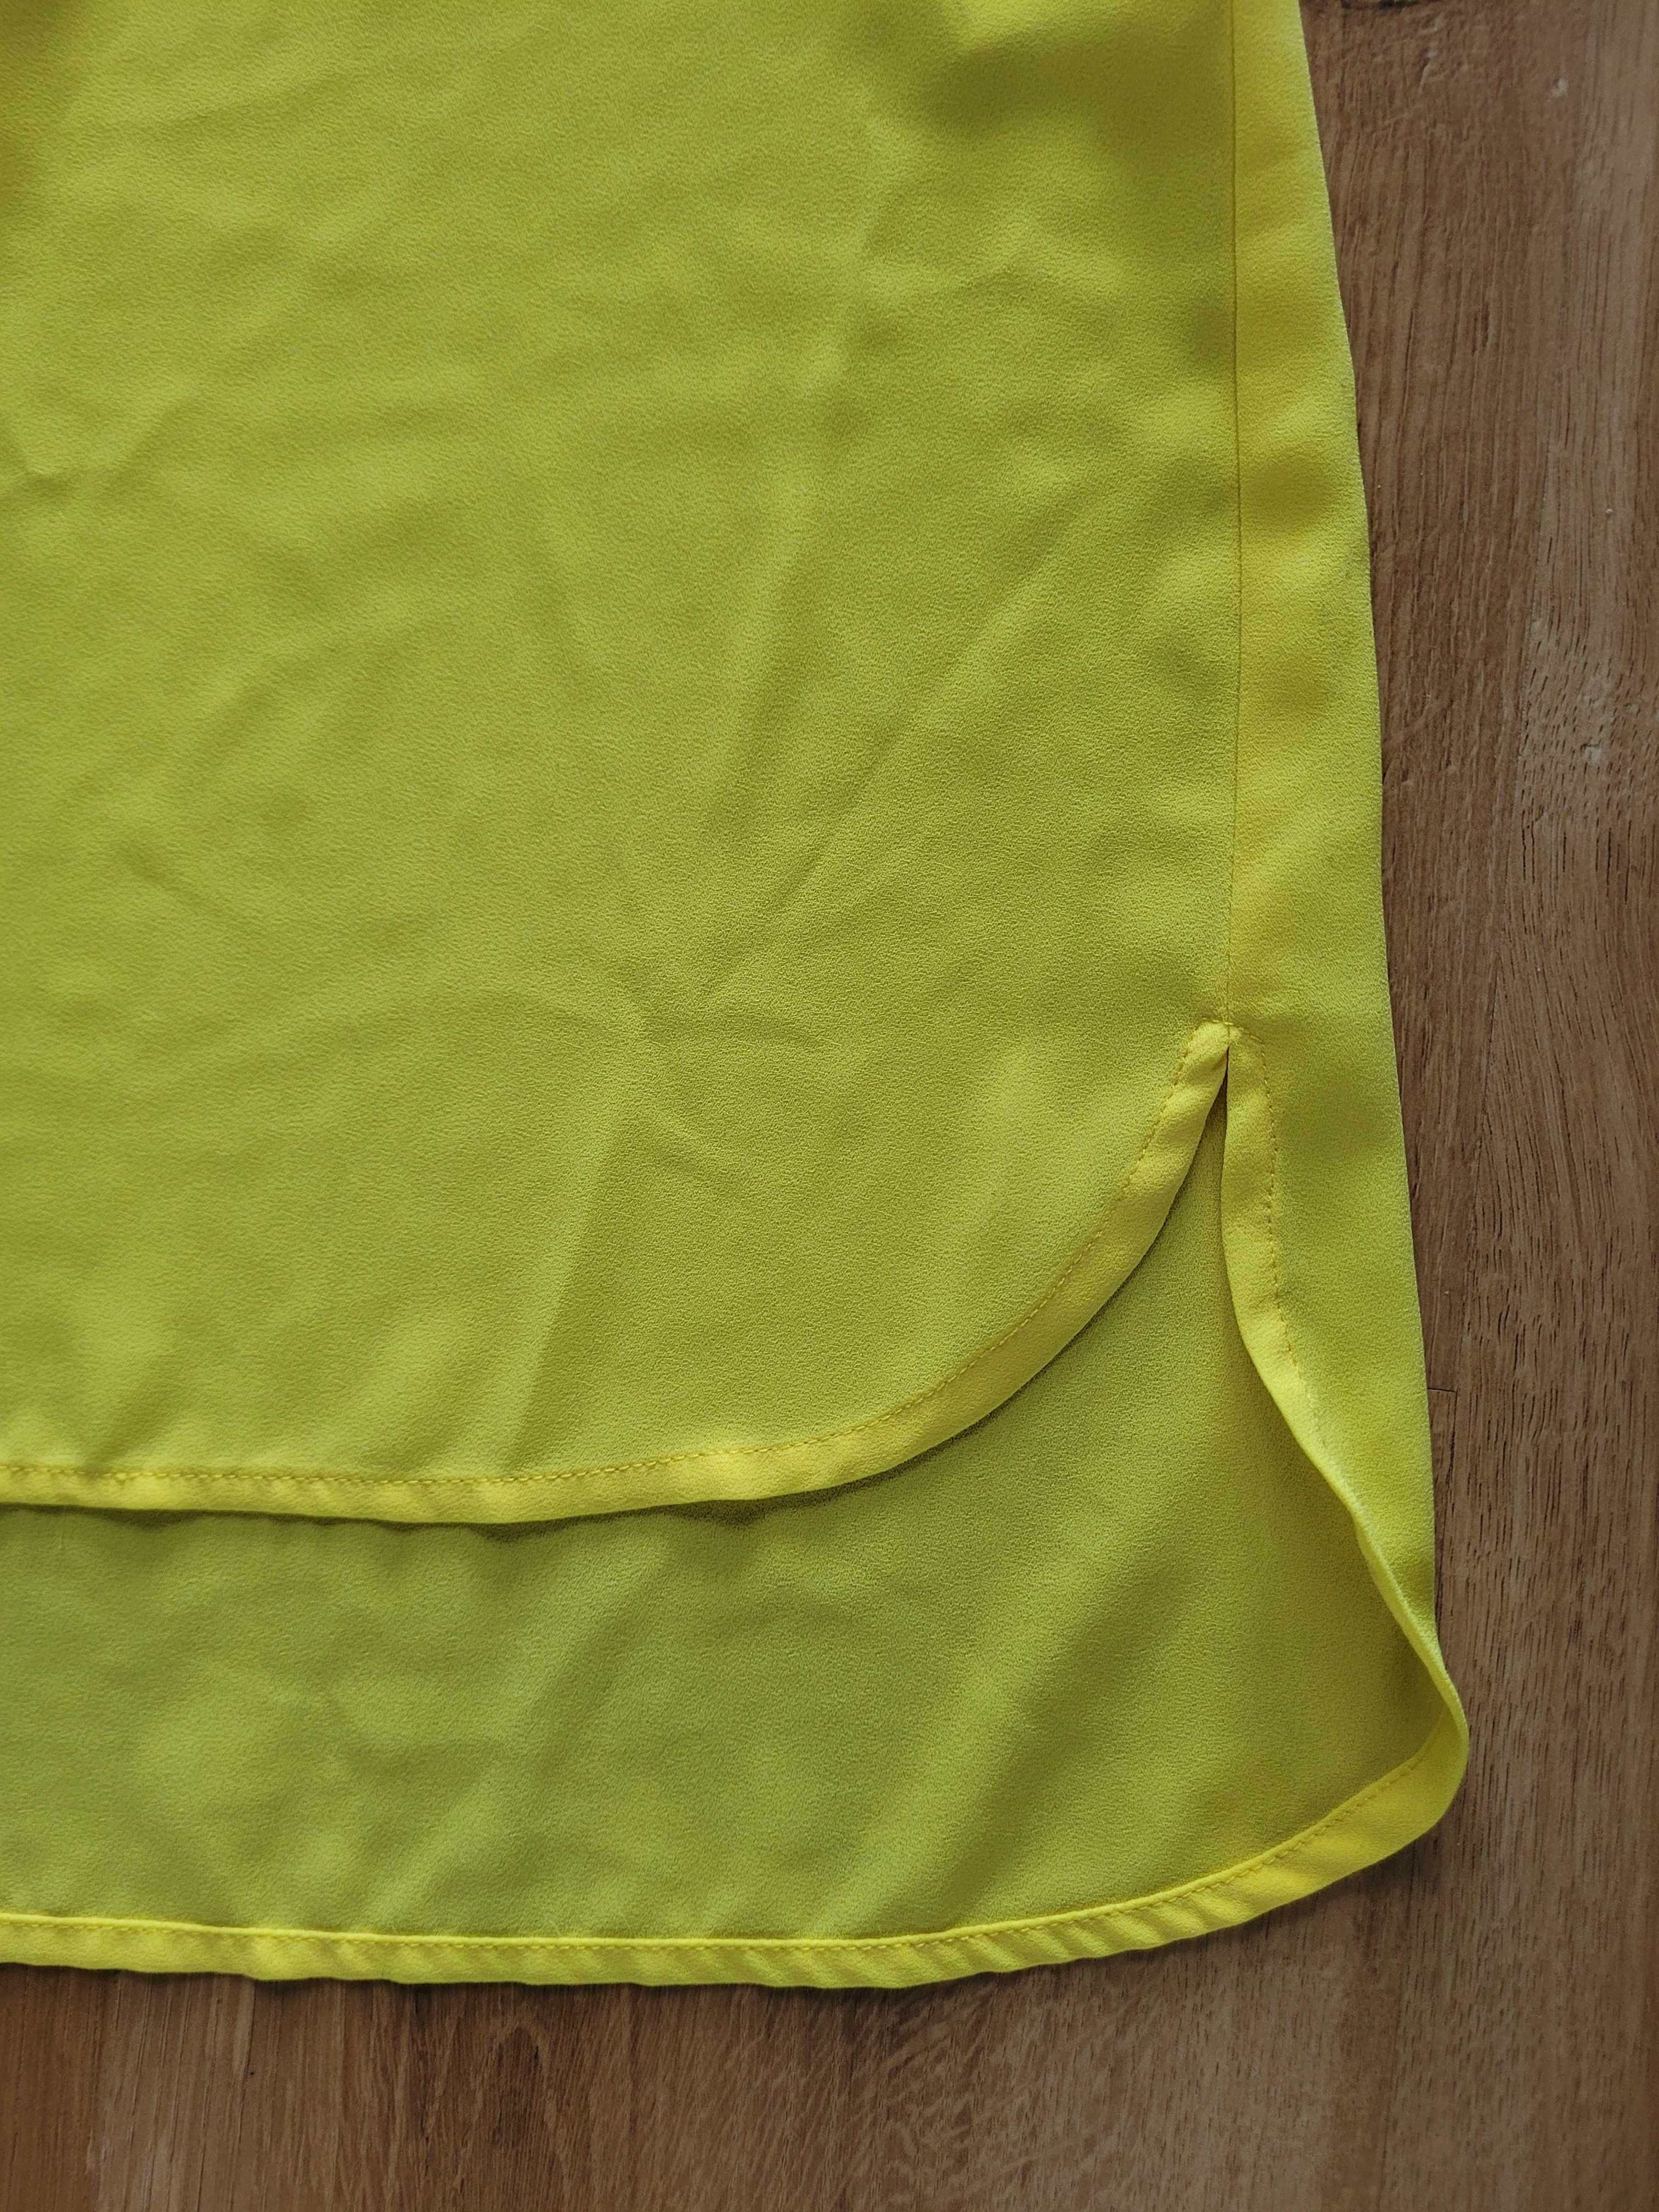 Koszula żółta rozpinana 38 M długa krótki rękaw tunika